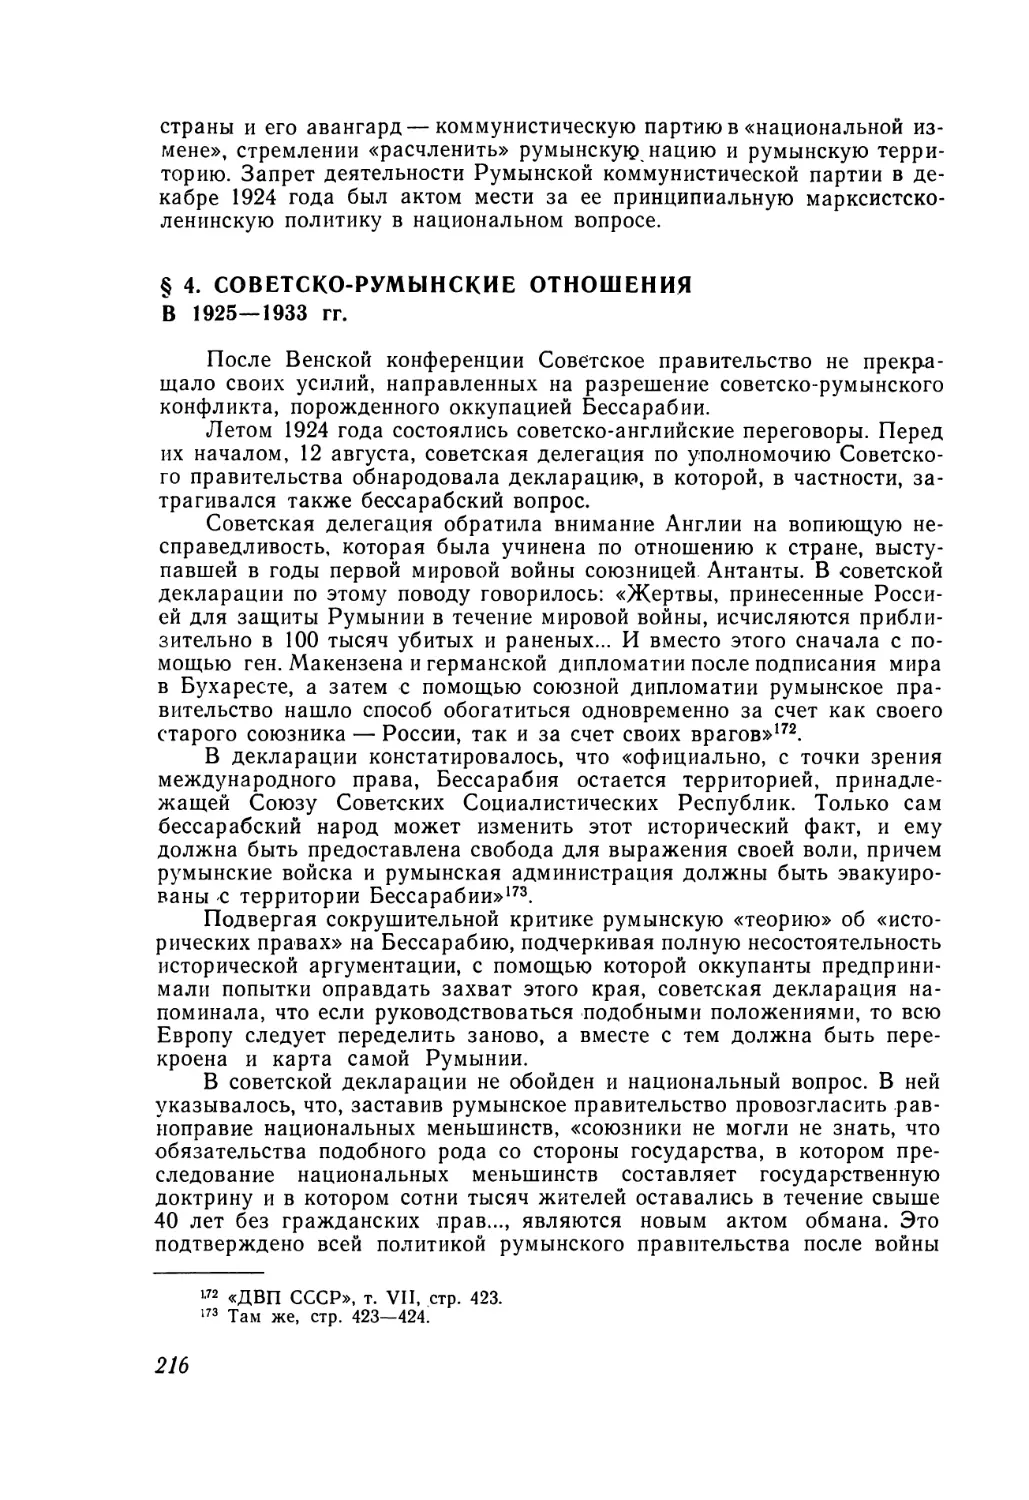 § 4. Советско-румынские отношения в 1925—1933 гг.